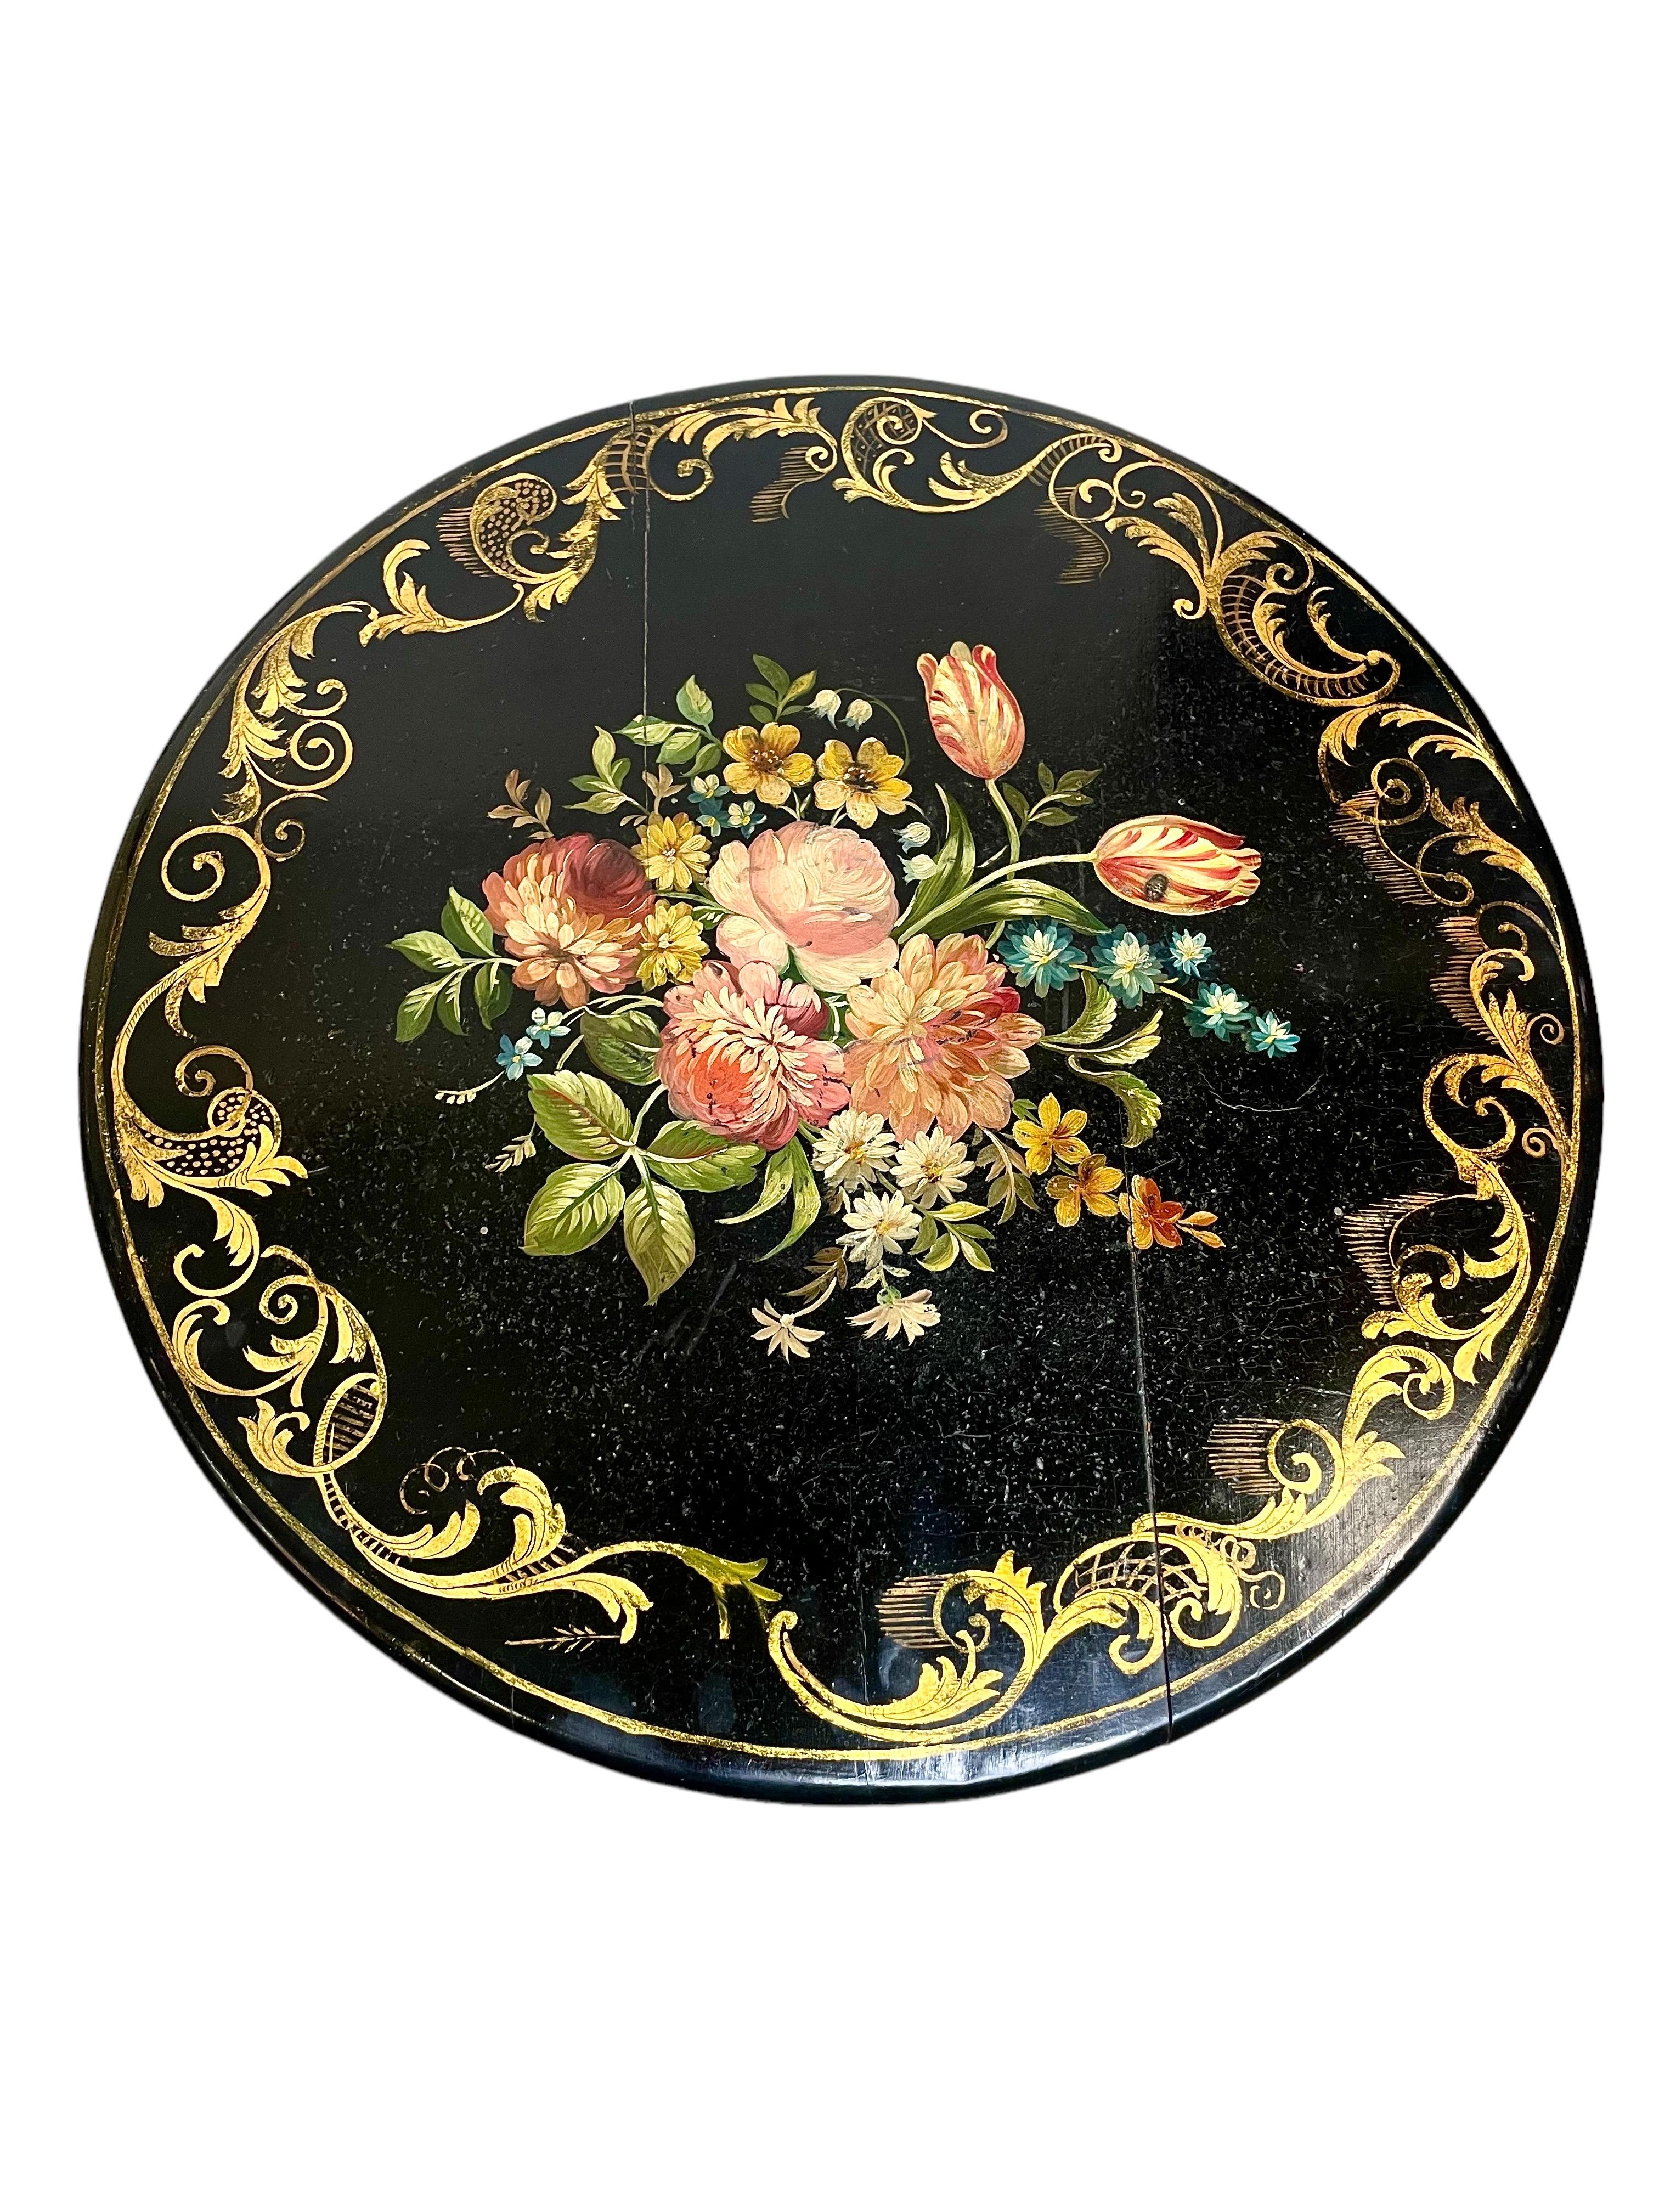 Superbe table de guéridon ébonisée de style Napoléon III, avec un plateau circulaire laqué, et présentant un décor doré de parcelles tourbillonnantes sur le pourtour et un motif polychrome peint à la main de fleurs sauvages et de feuillage au